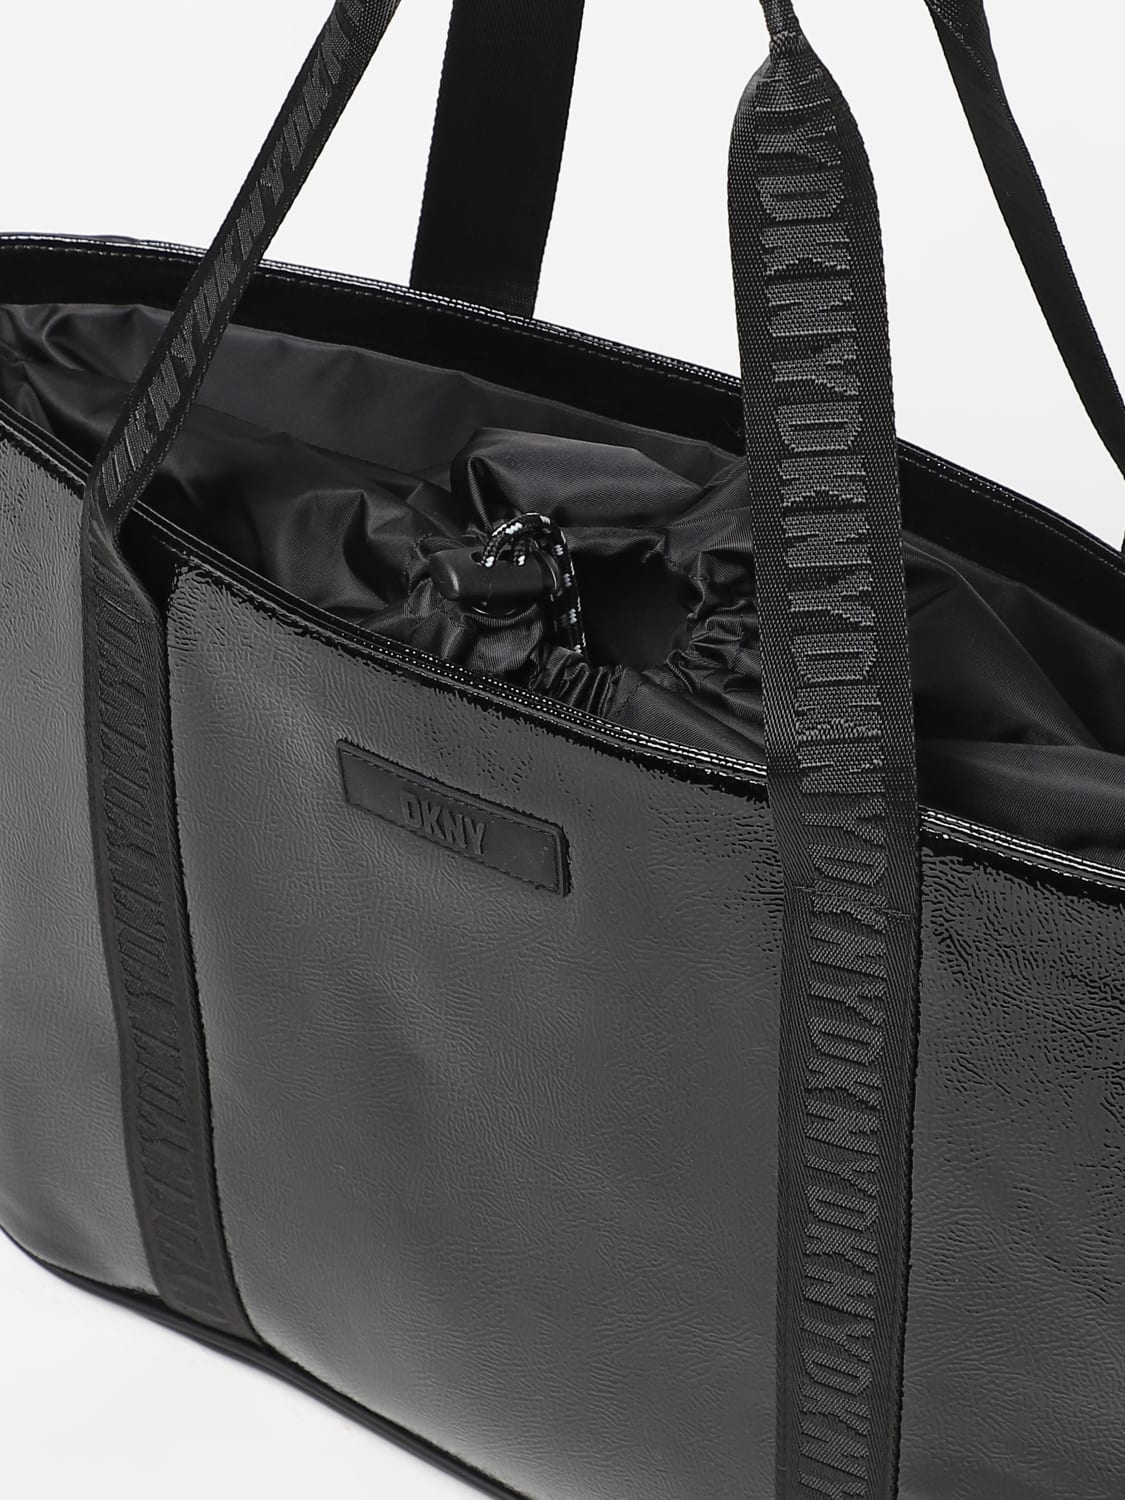 DKNY: bag for kids - Black  Dkny bag D30572 online at